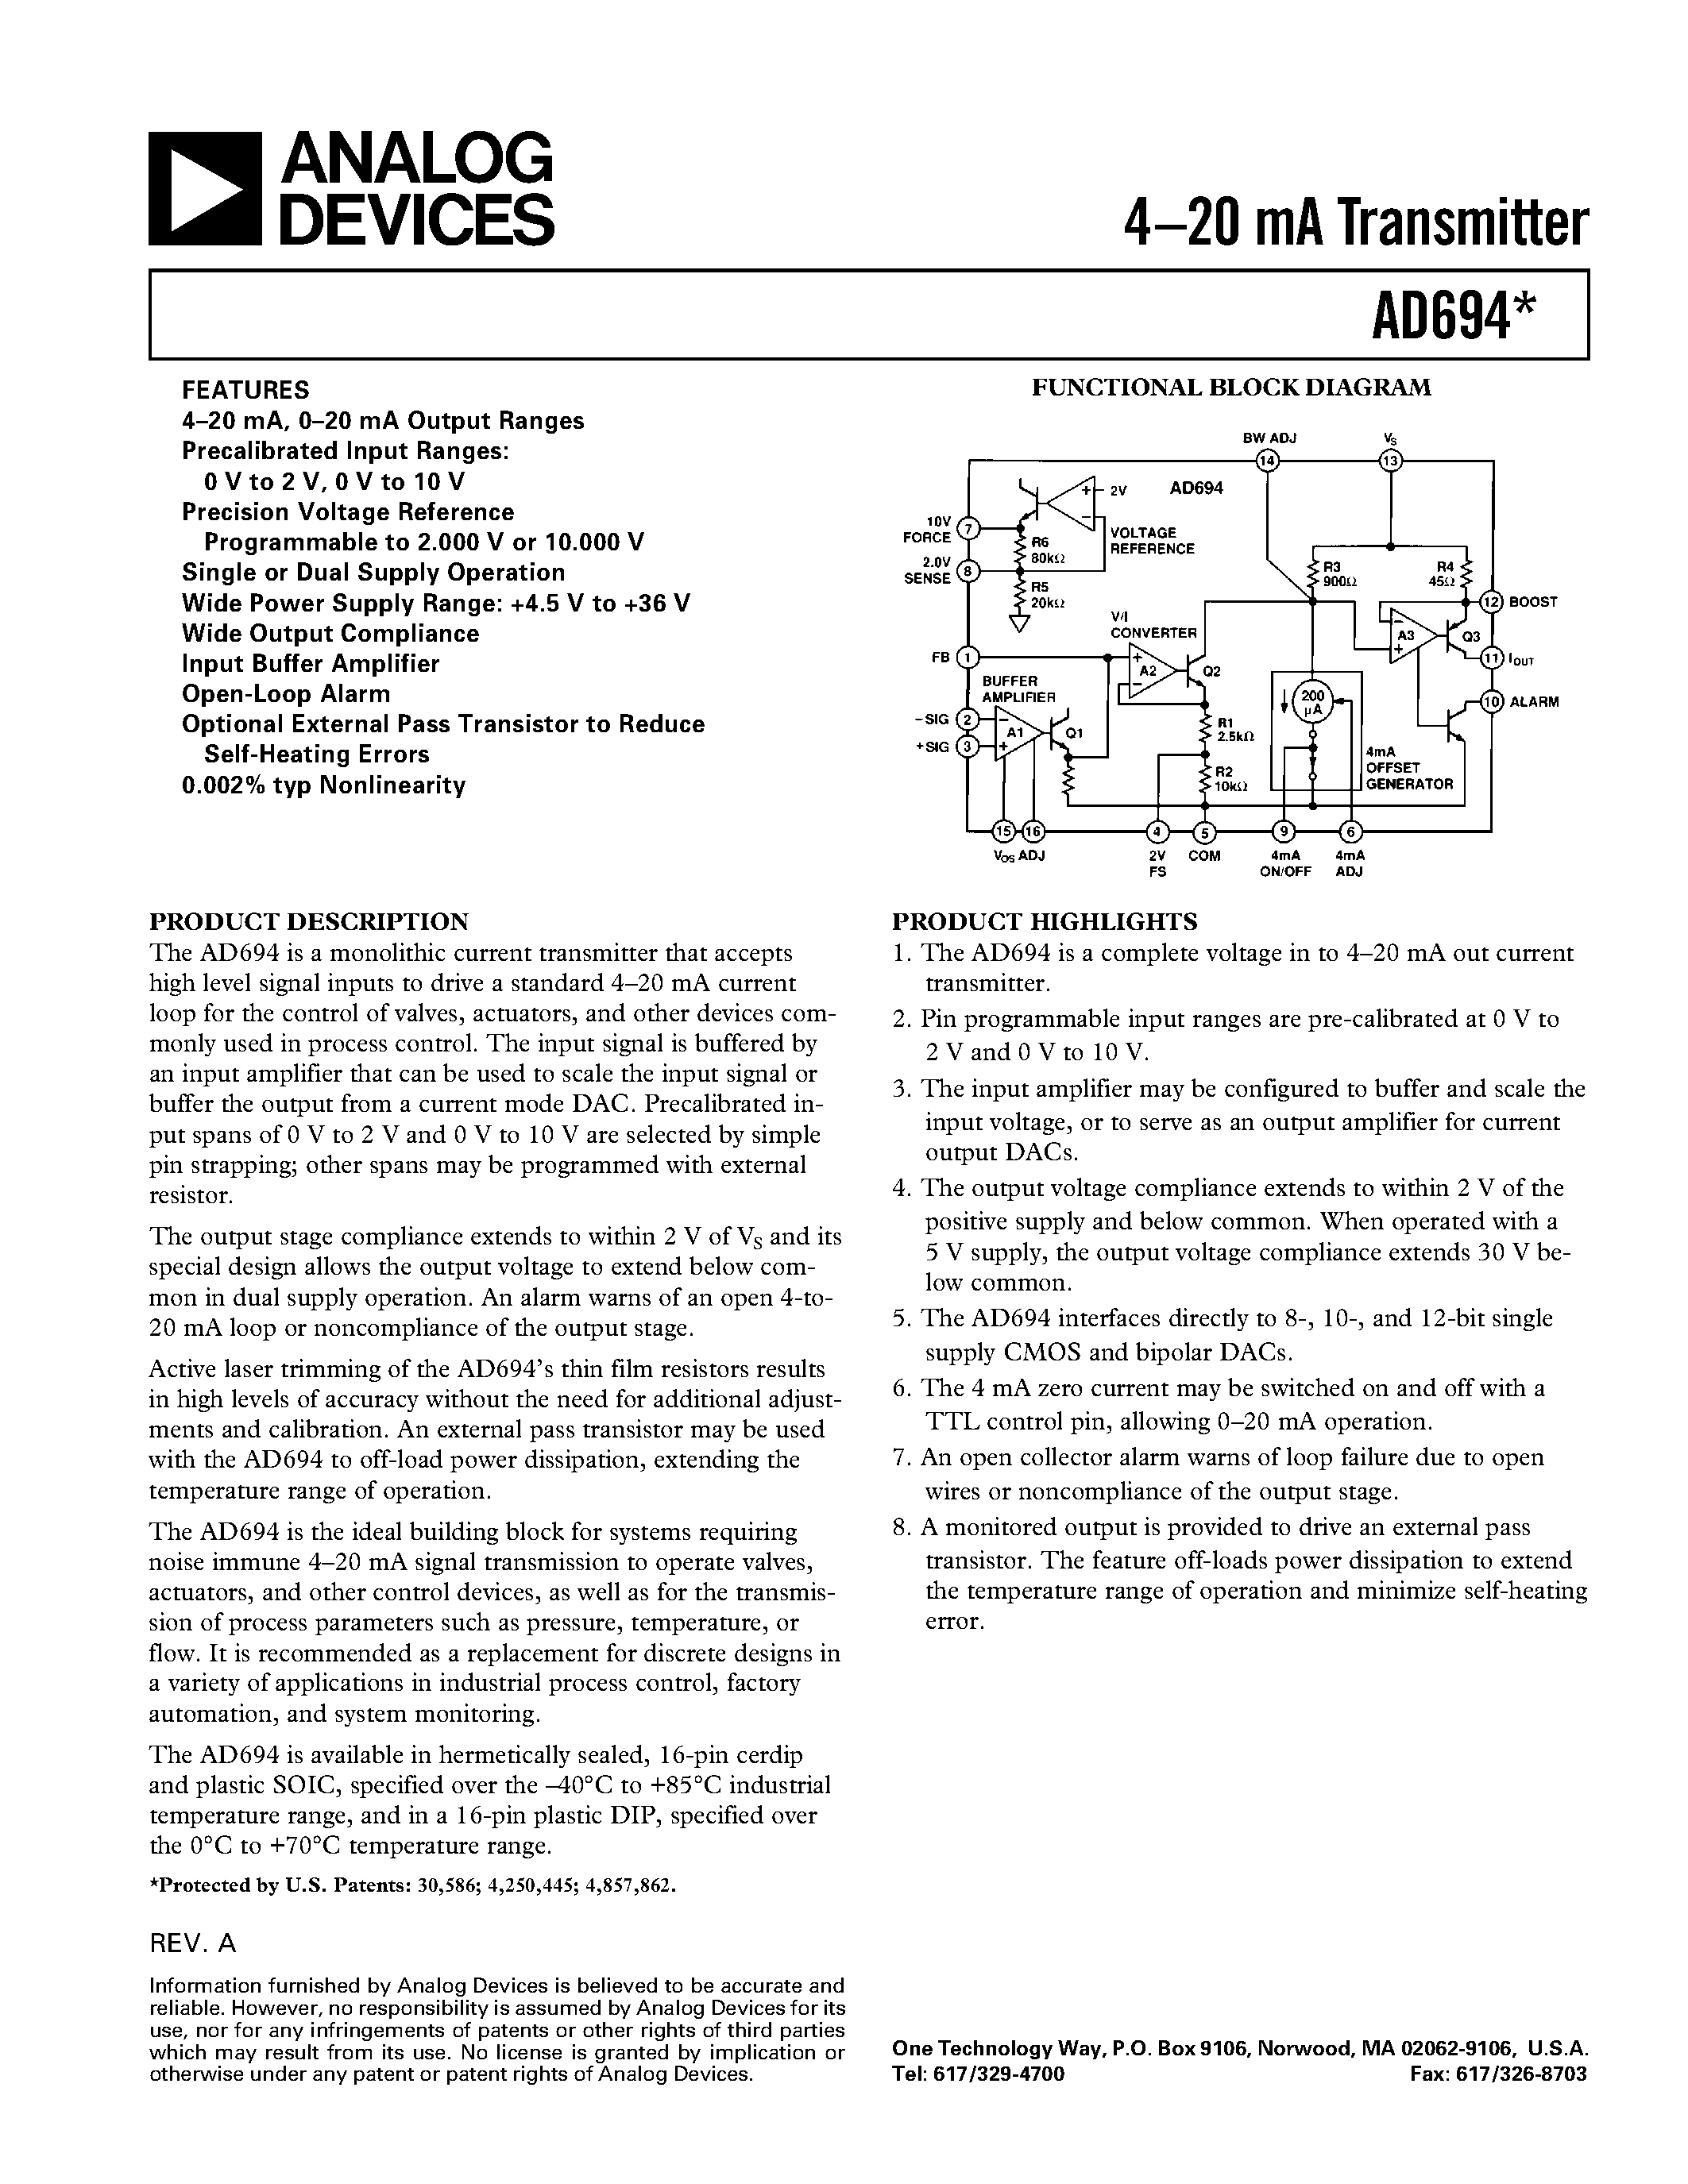 Даташит AD694BR - 4.20 mA Transmitter страница 1